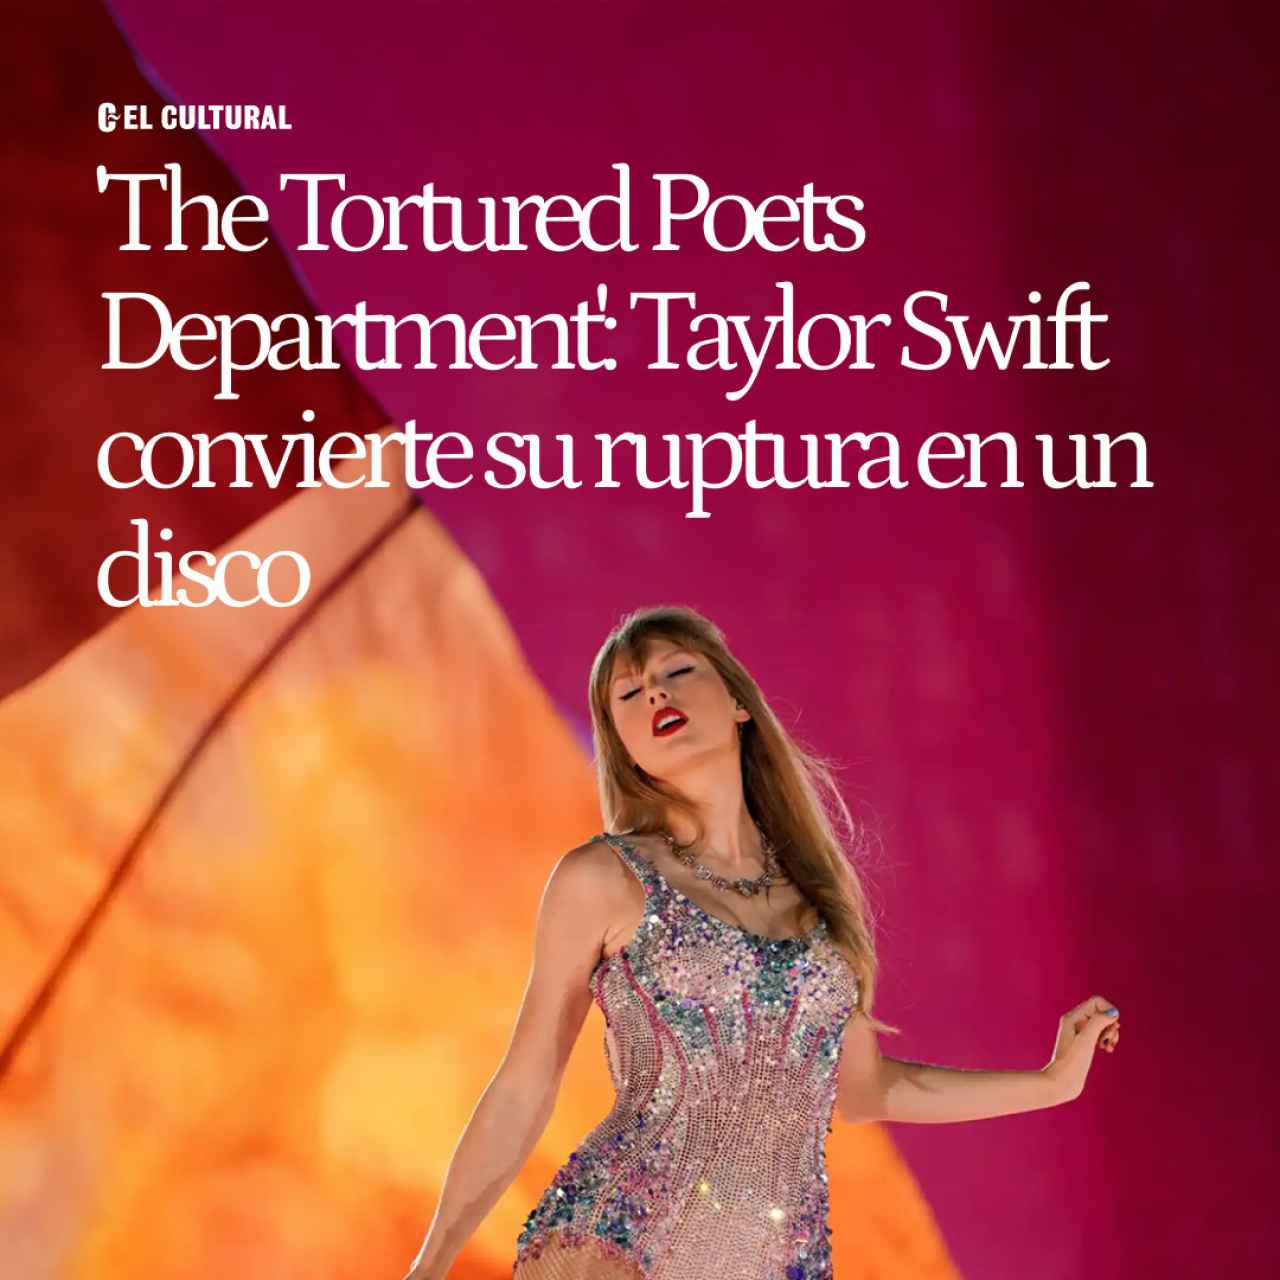 'The Tortured Poets Department': Taylor Swift convierte su ruptura en un disco terapéutico